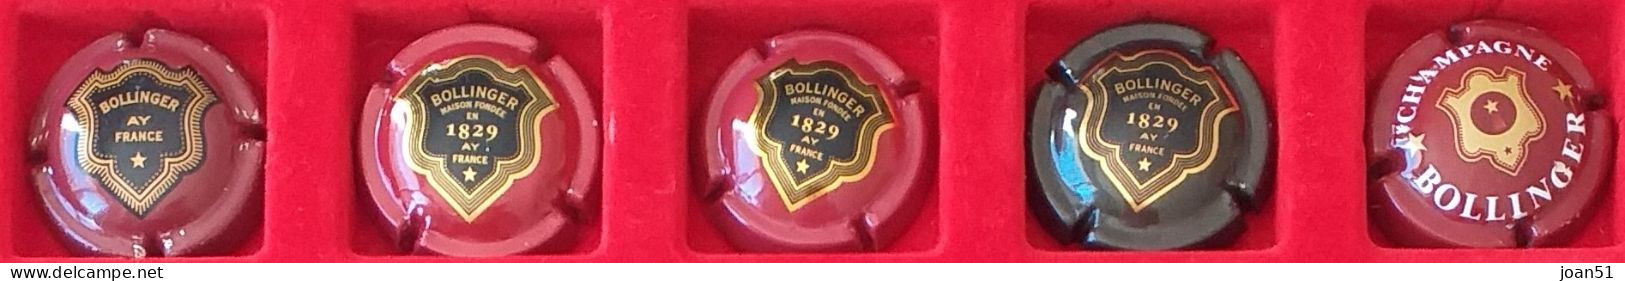 (3) 5 Capsules Bollinger - Bollinger